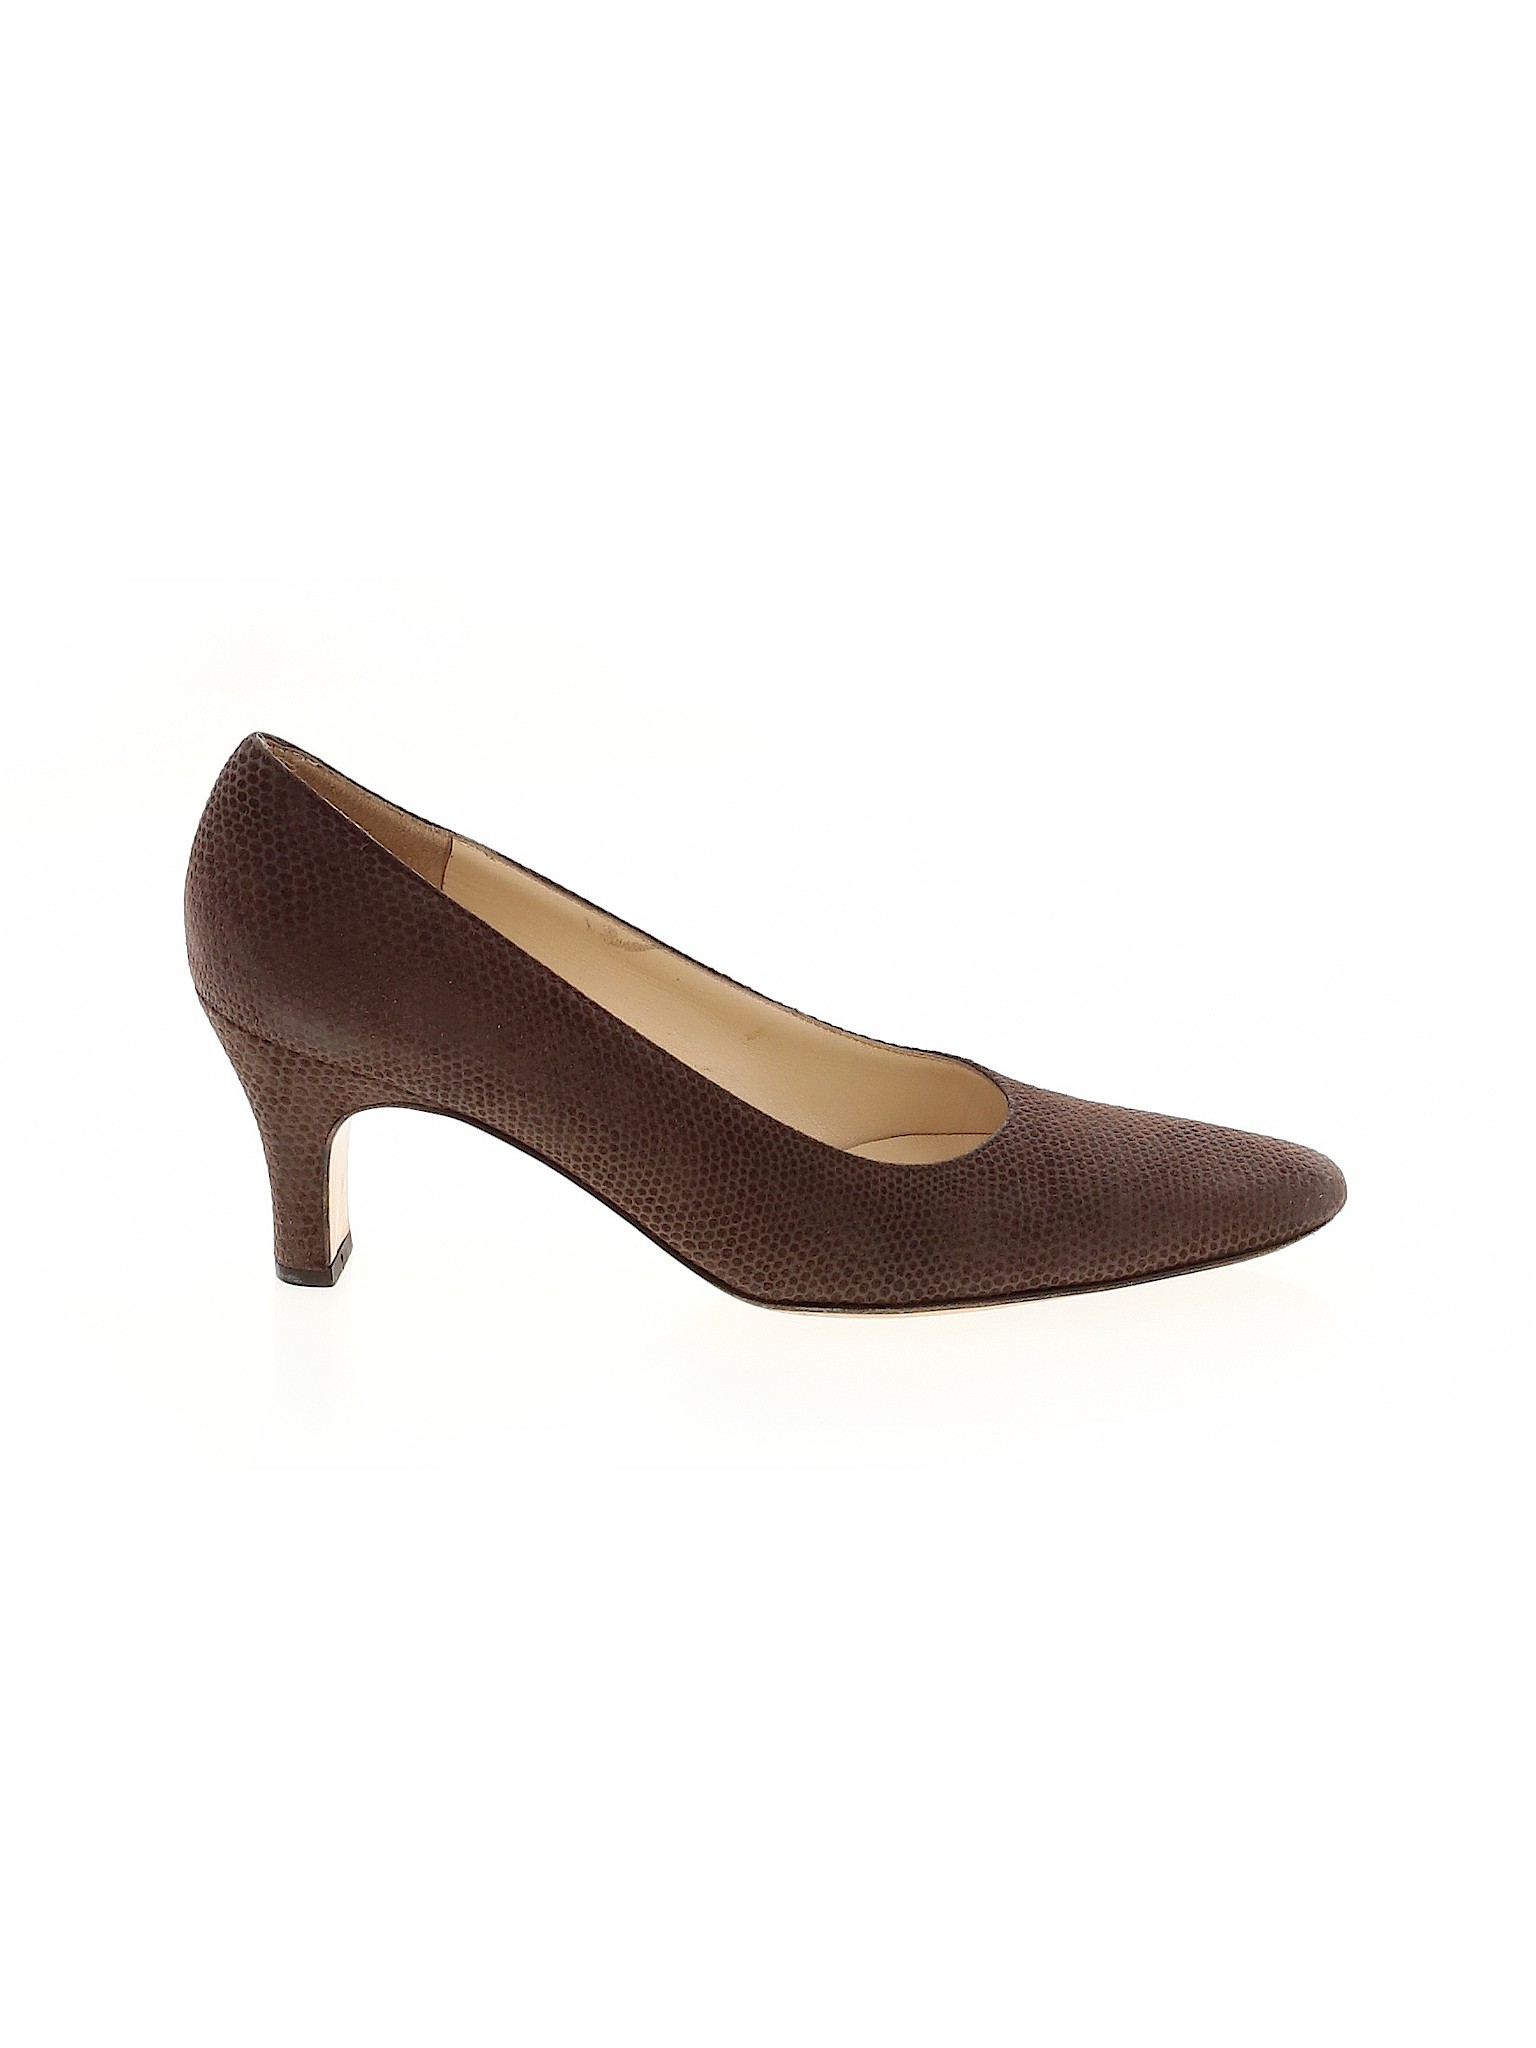 Salvatore Ferragamo Women Brown Heels US 7.5 | eBay